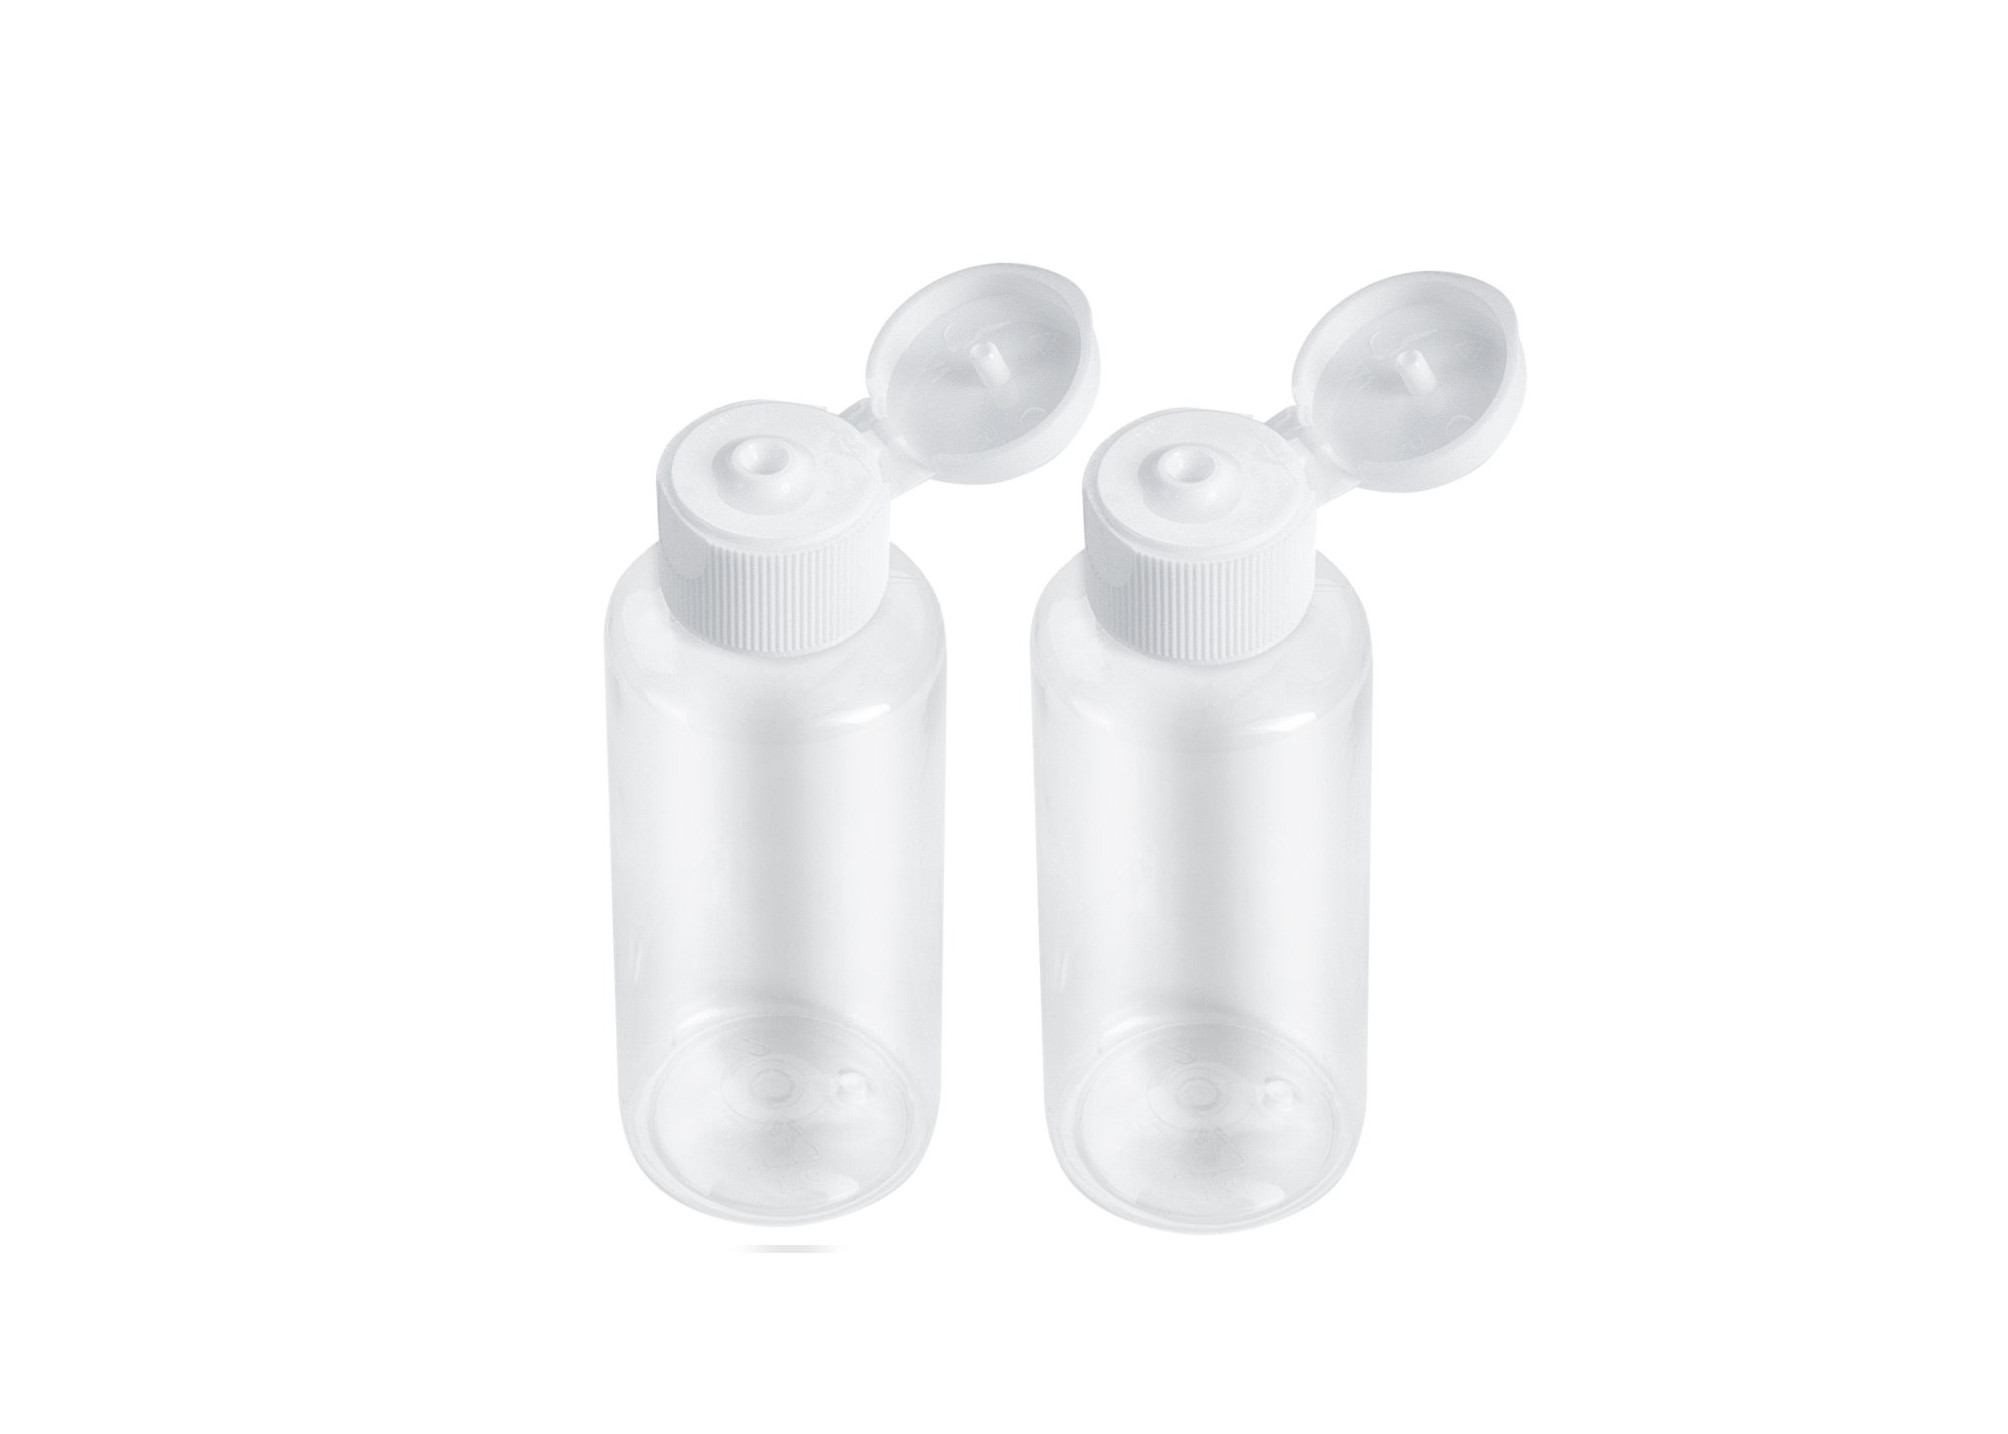 100 Ml Hand Cream Lotion Dispenser Bottles Refillable Long Life Span